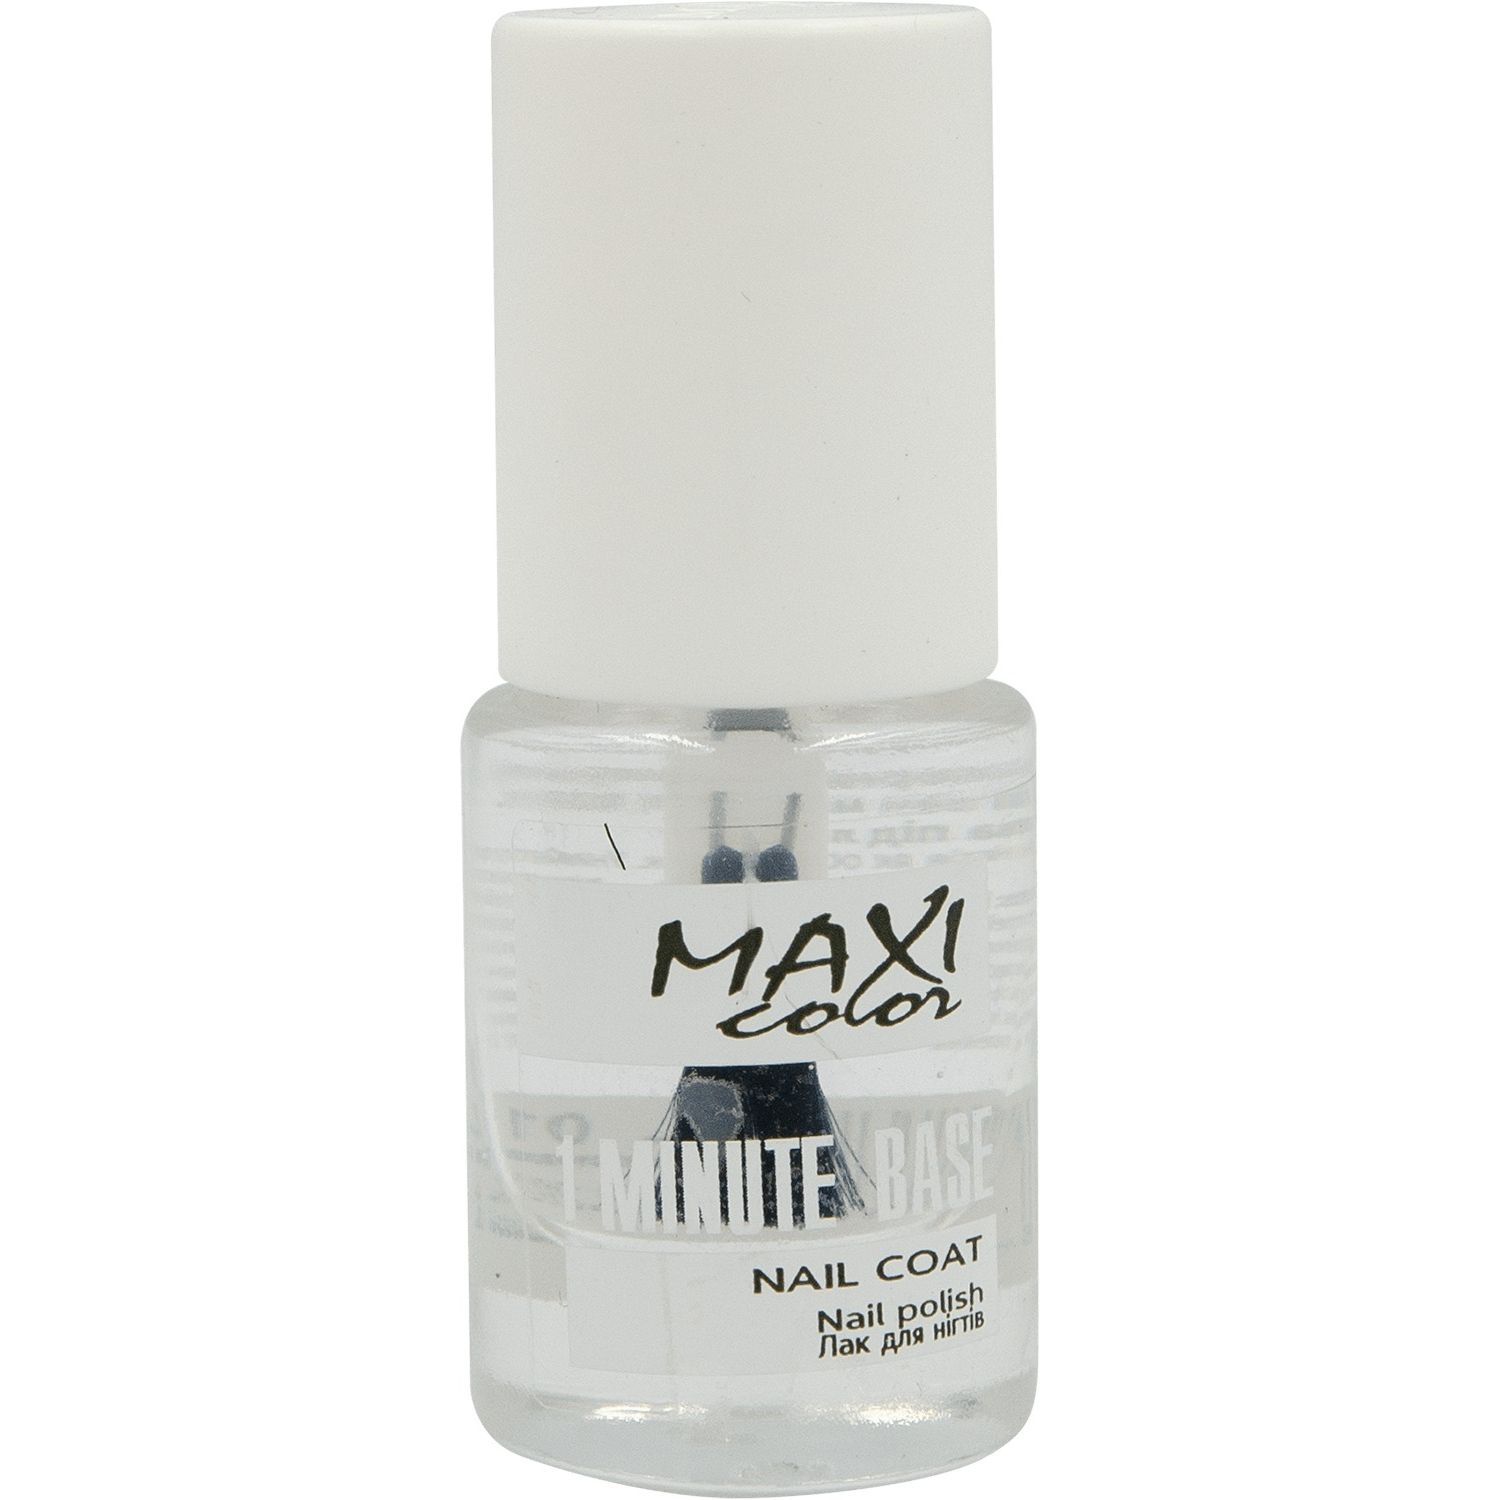 Основа для лаку Maxi Color 1 Minute Base Nail Coat №001, 6 мл - фото 1